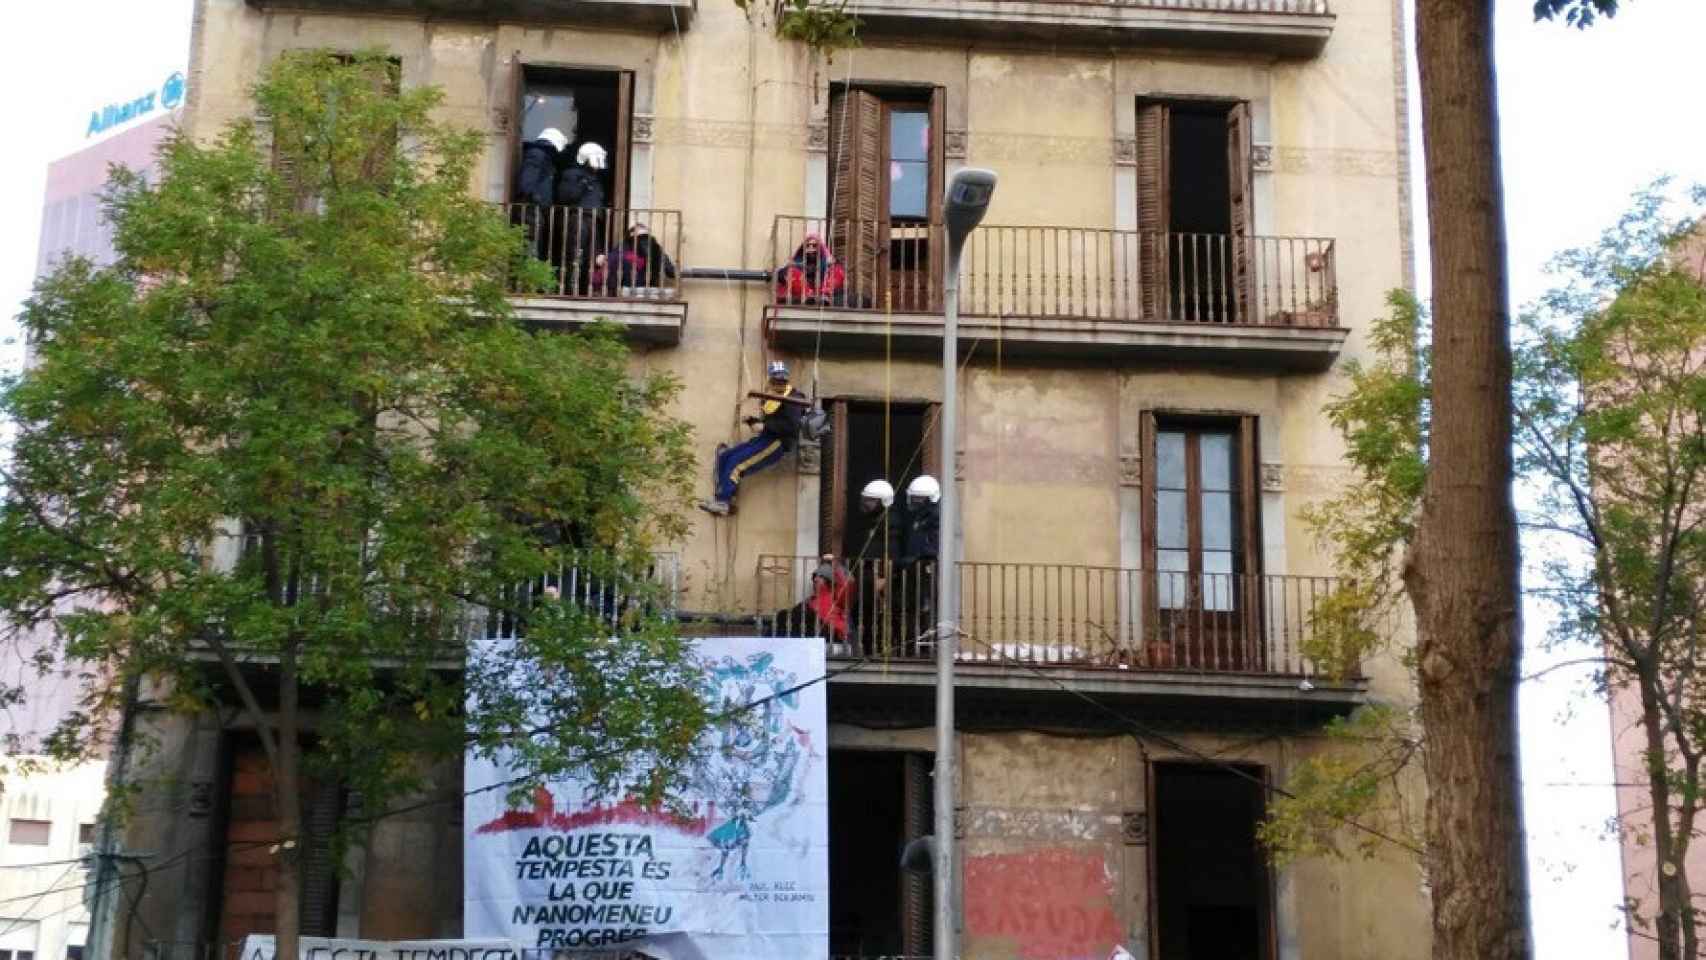 Manifestación para evitar el desalojo de la Guardia Urbana de una casa okupada en Sants / CG